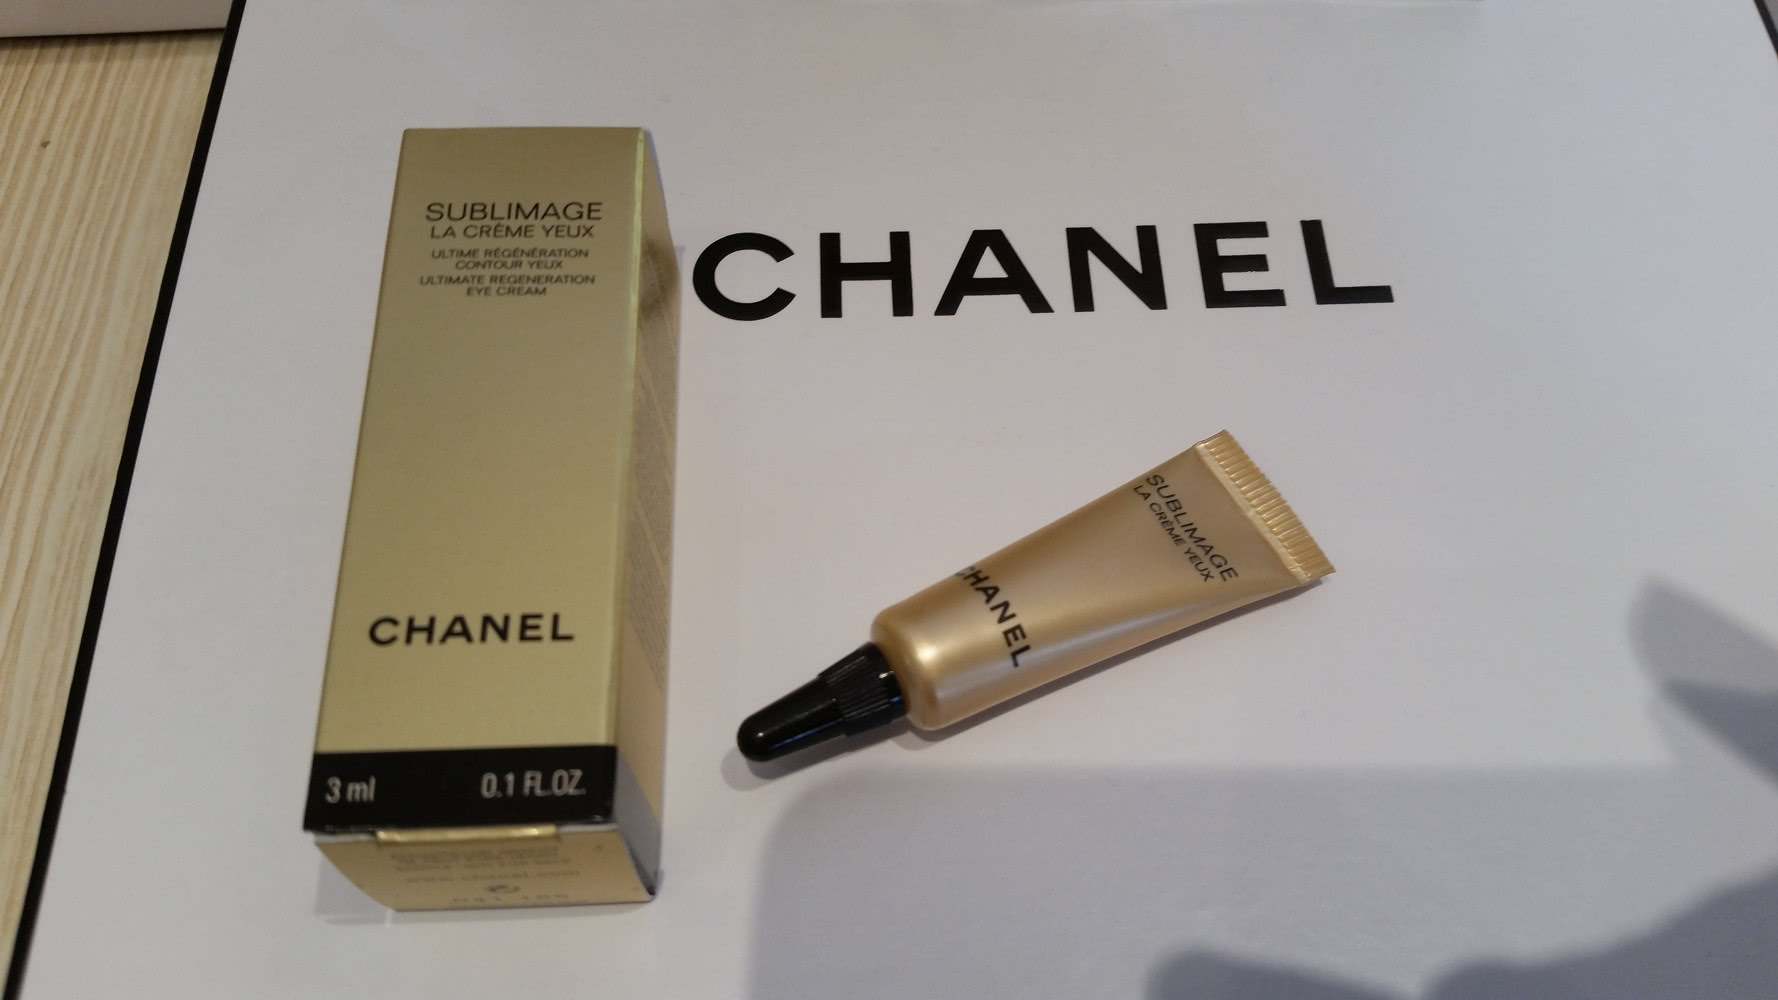 Chanel Sublimage La Creme Yeux  - крем для глаз 4 штук по 3 мл.= 12 мл.